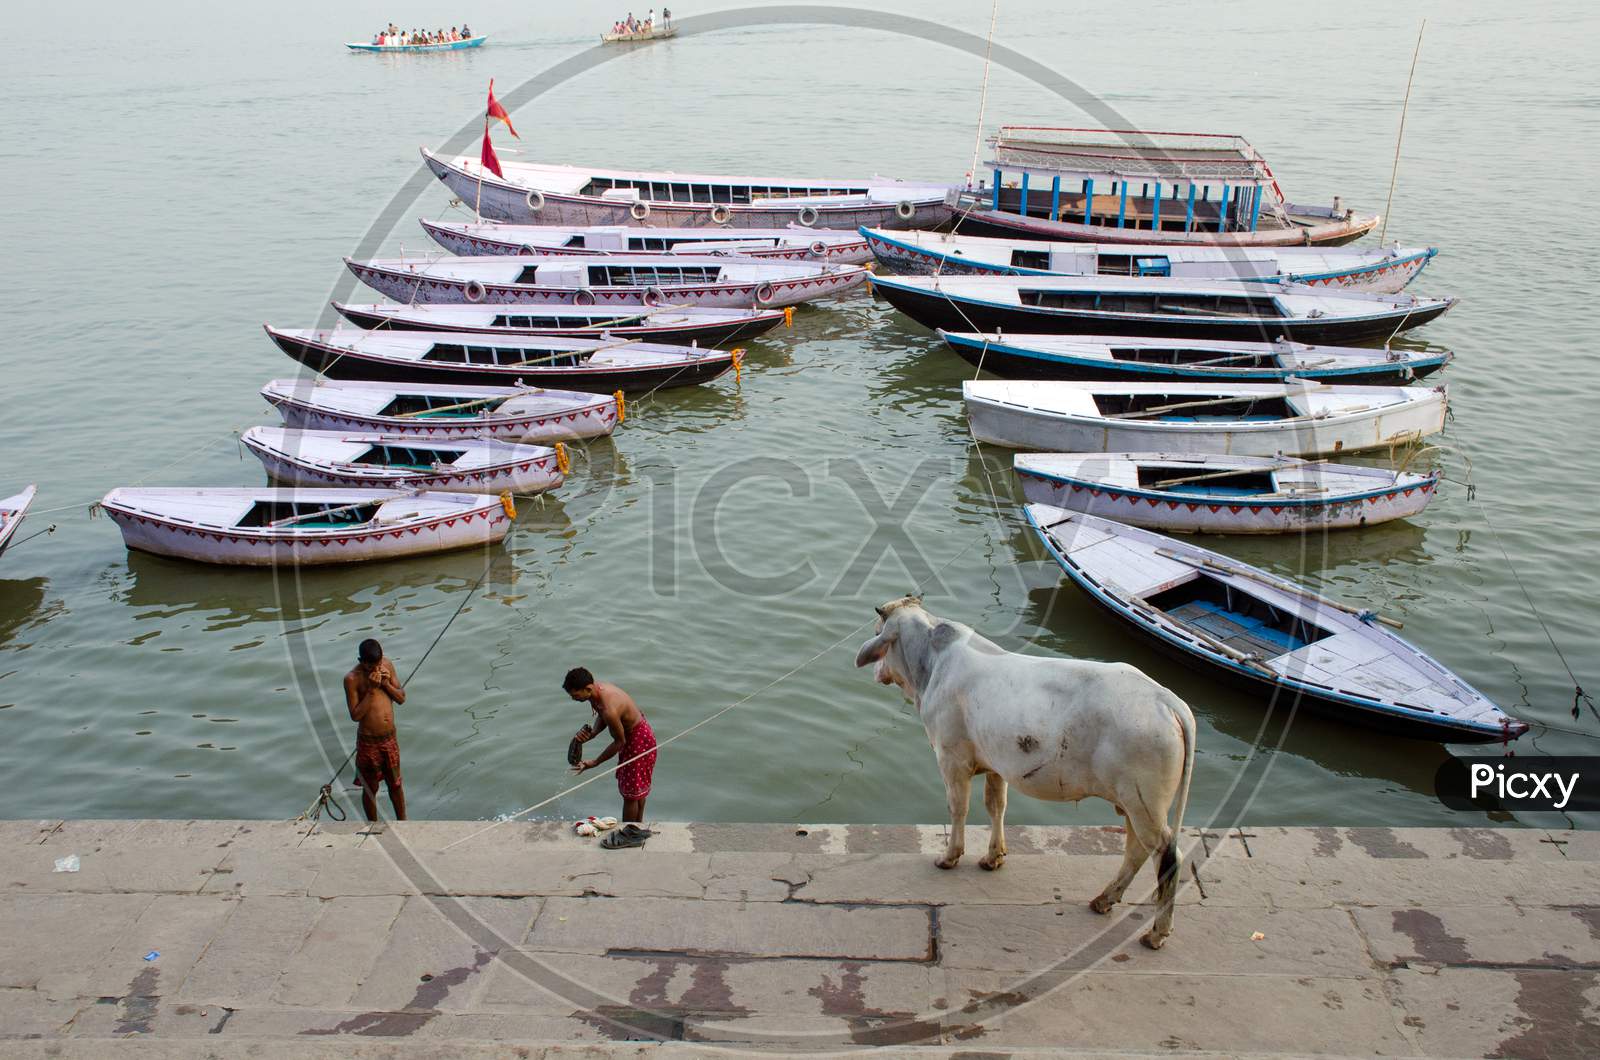 bull and boats pattern at varanasi